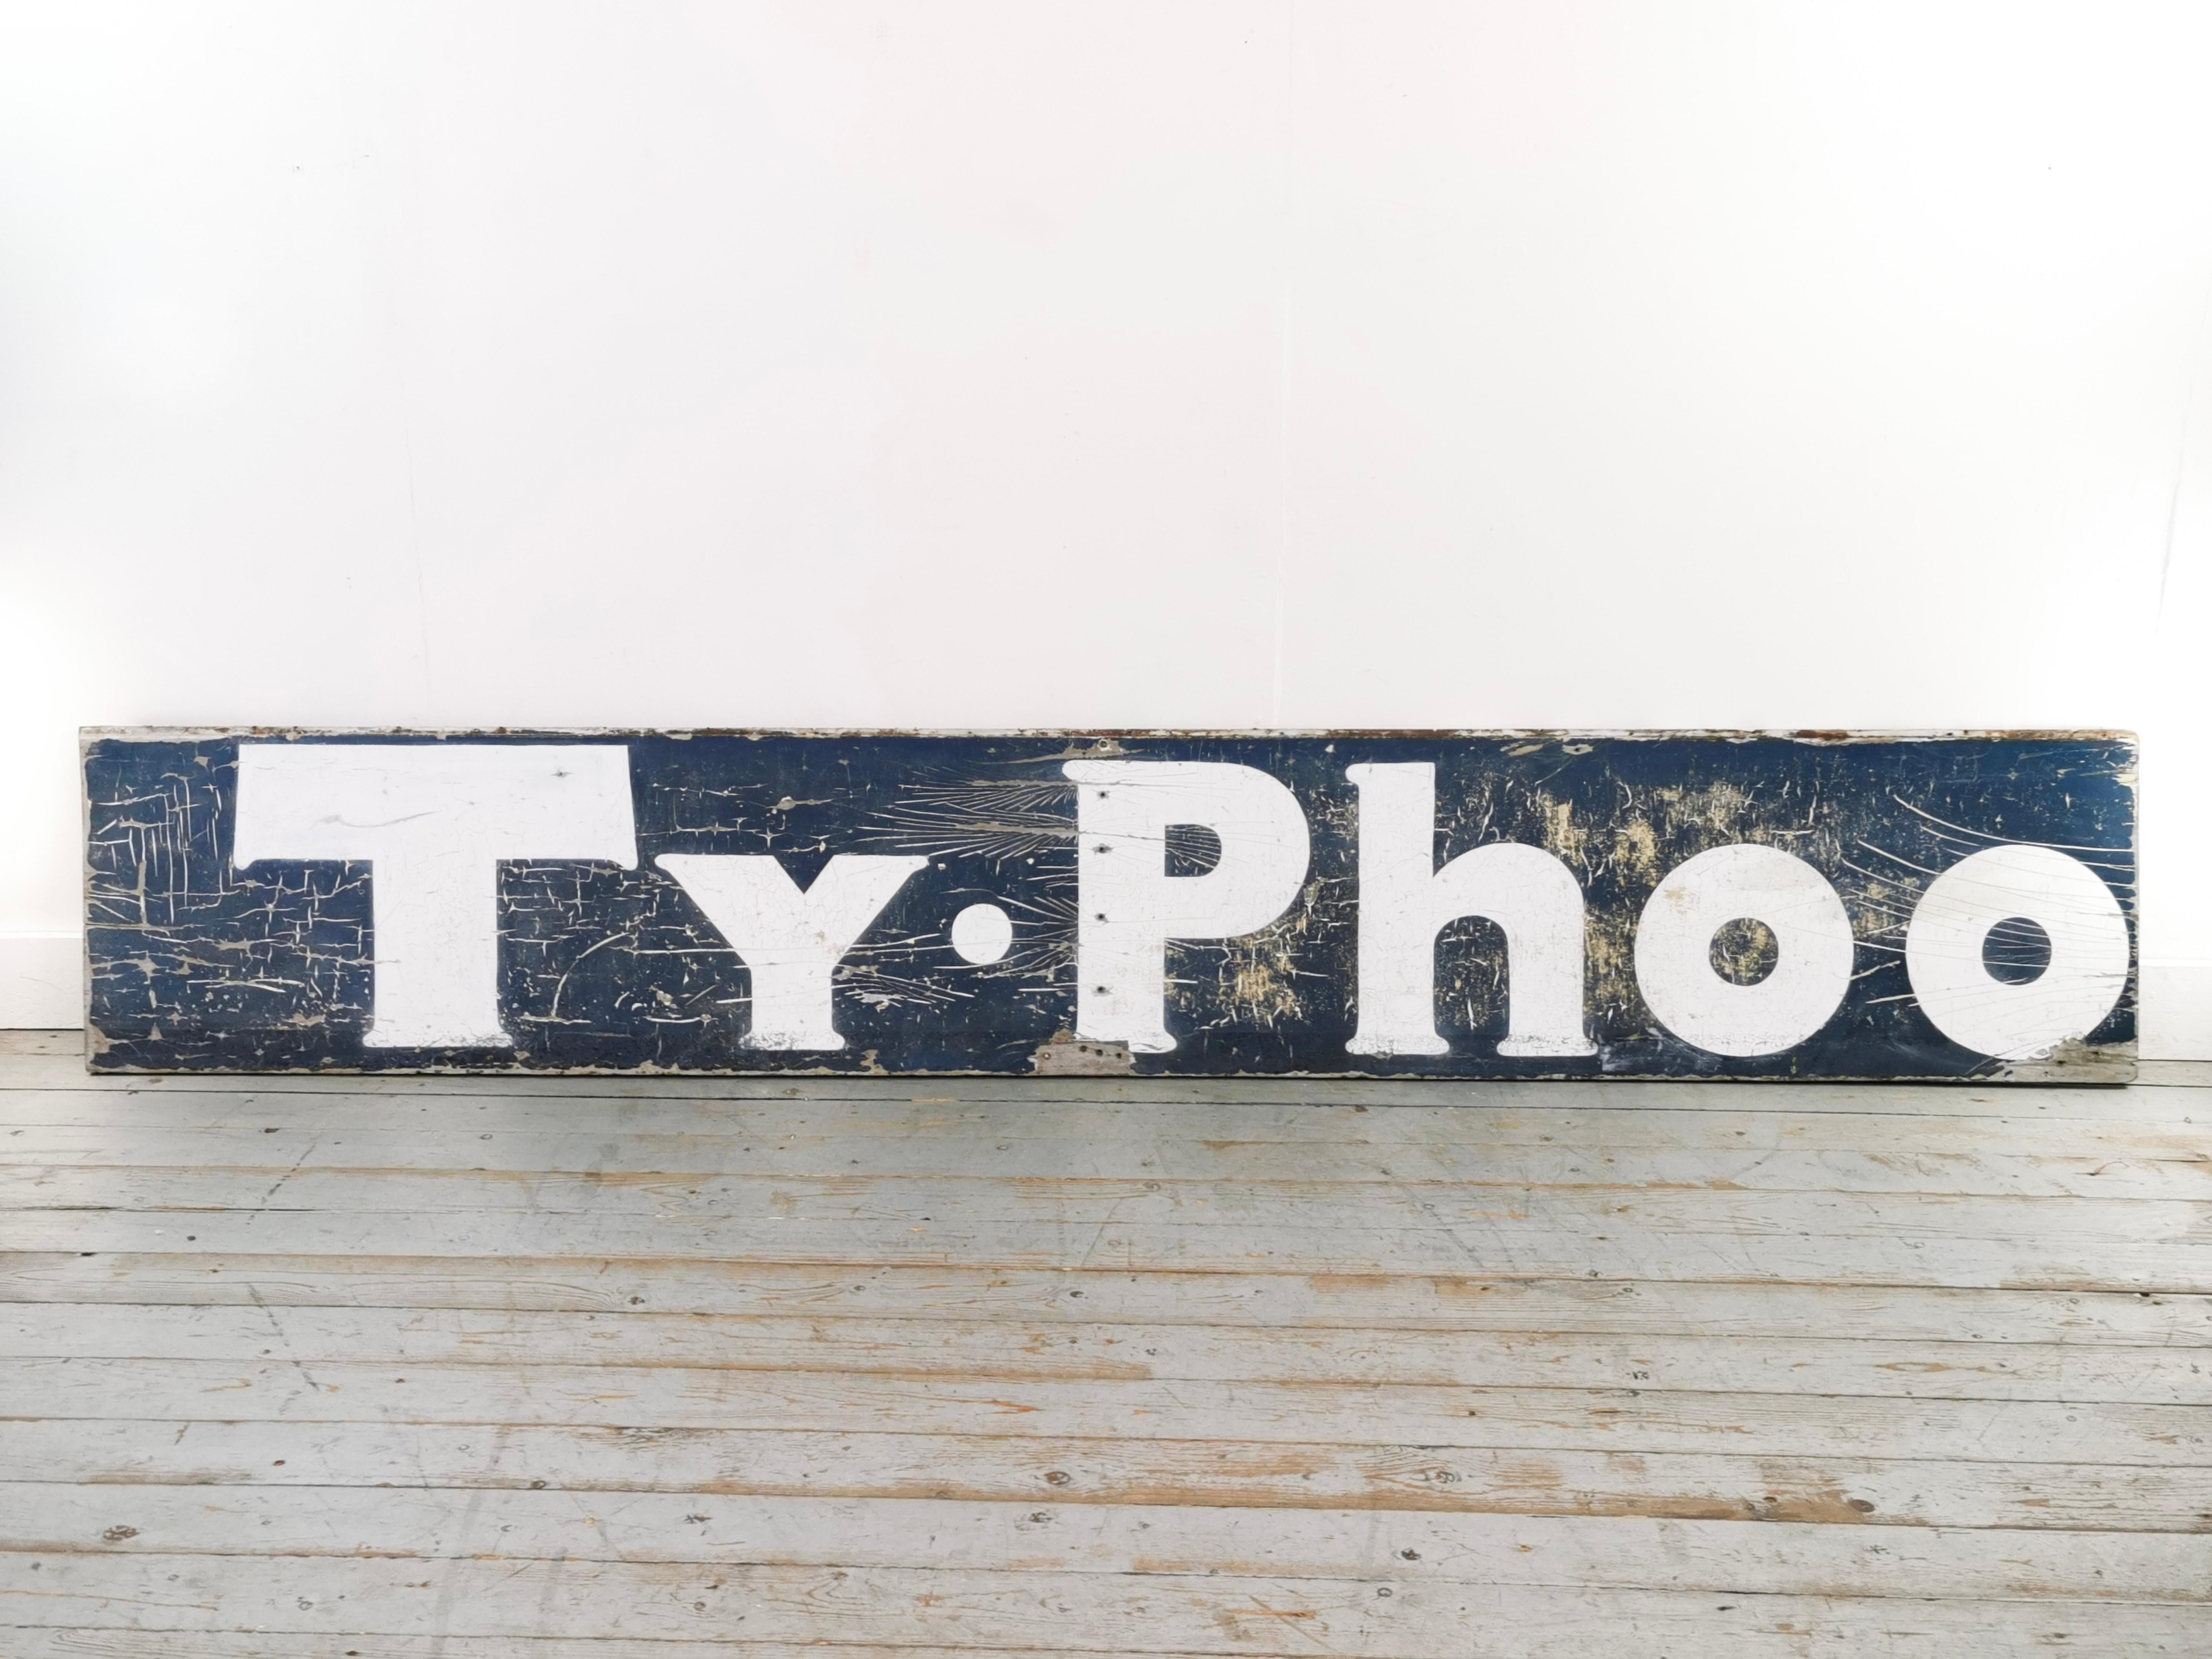 Panneau publicitaire en bois peint pour le thé Typhoo

Une très grande enseigne publicitaire en bois massif recyclé de 9,5 pieds pour le thé Typhoo. Date du début du 20e siècle.

Entièrement d'origine, sans trous de fixation et avec un aspect